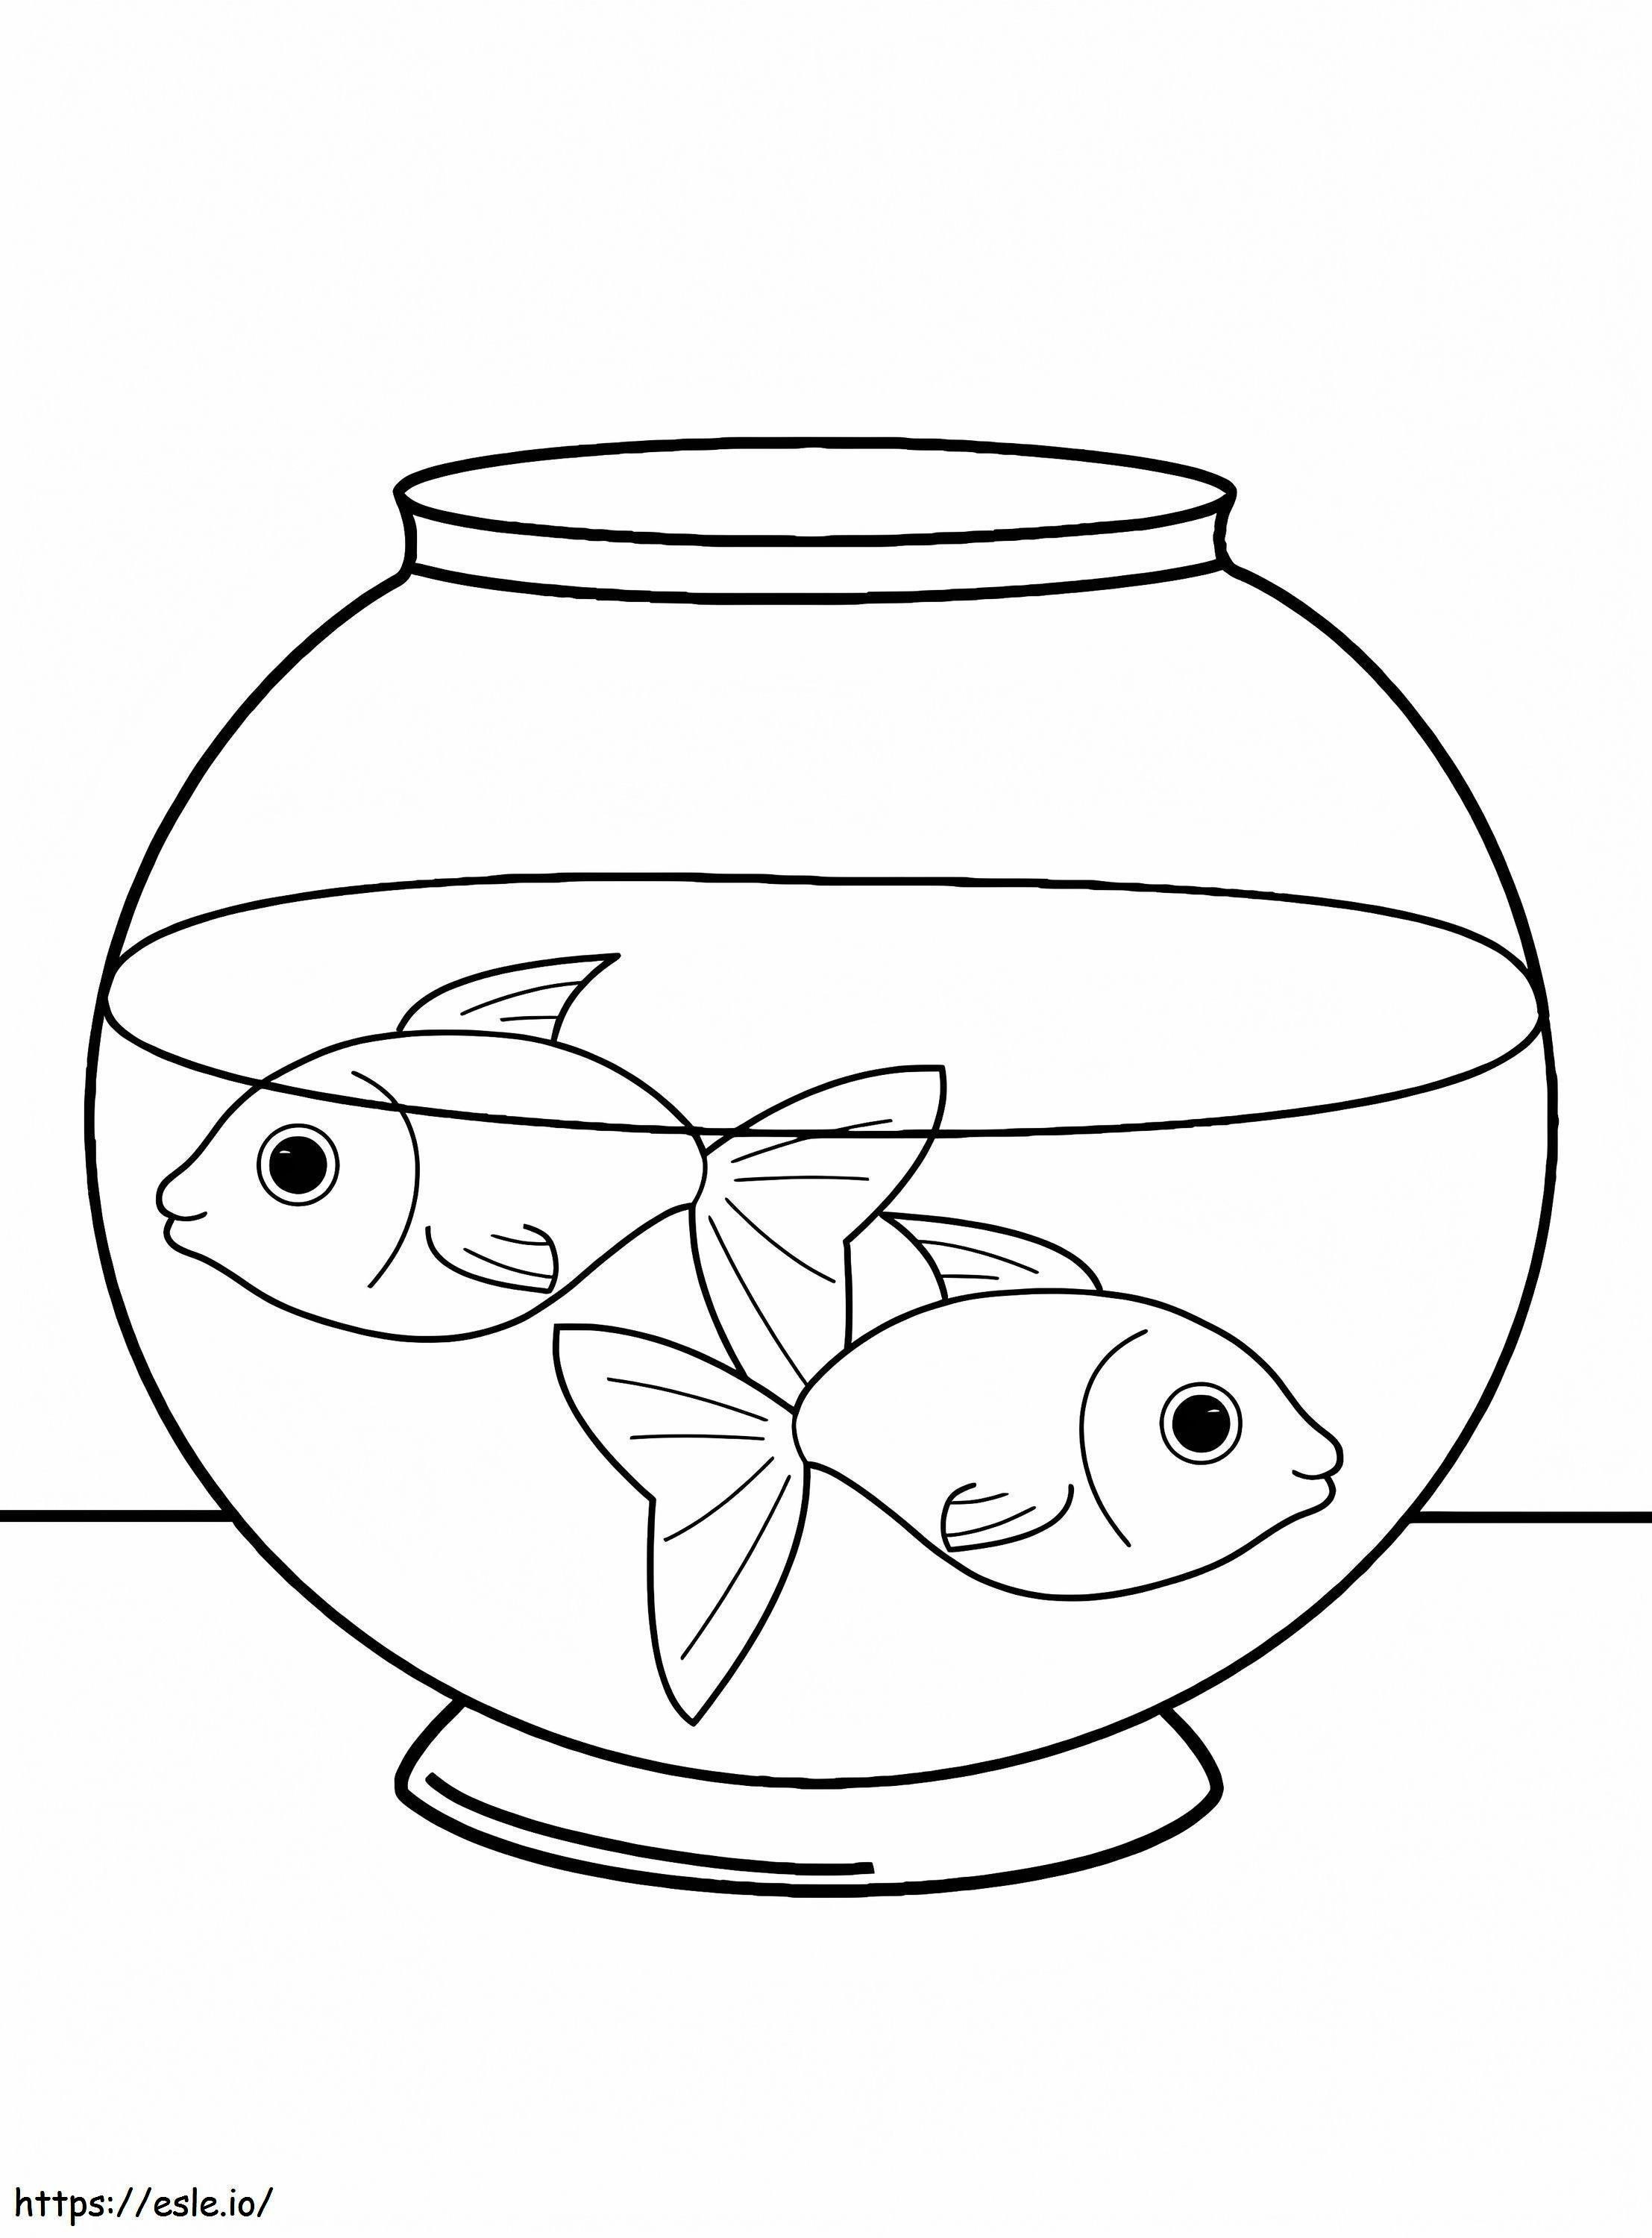 Haustierfische ausmalbilder